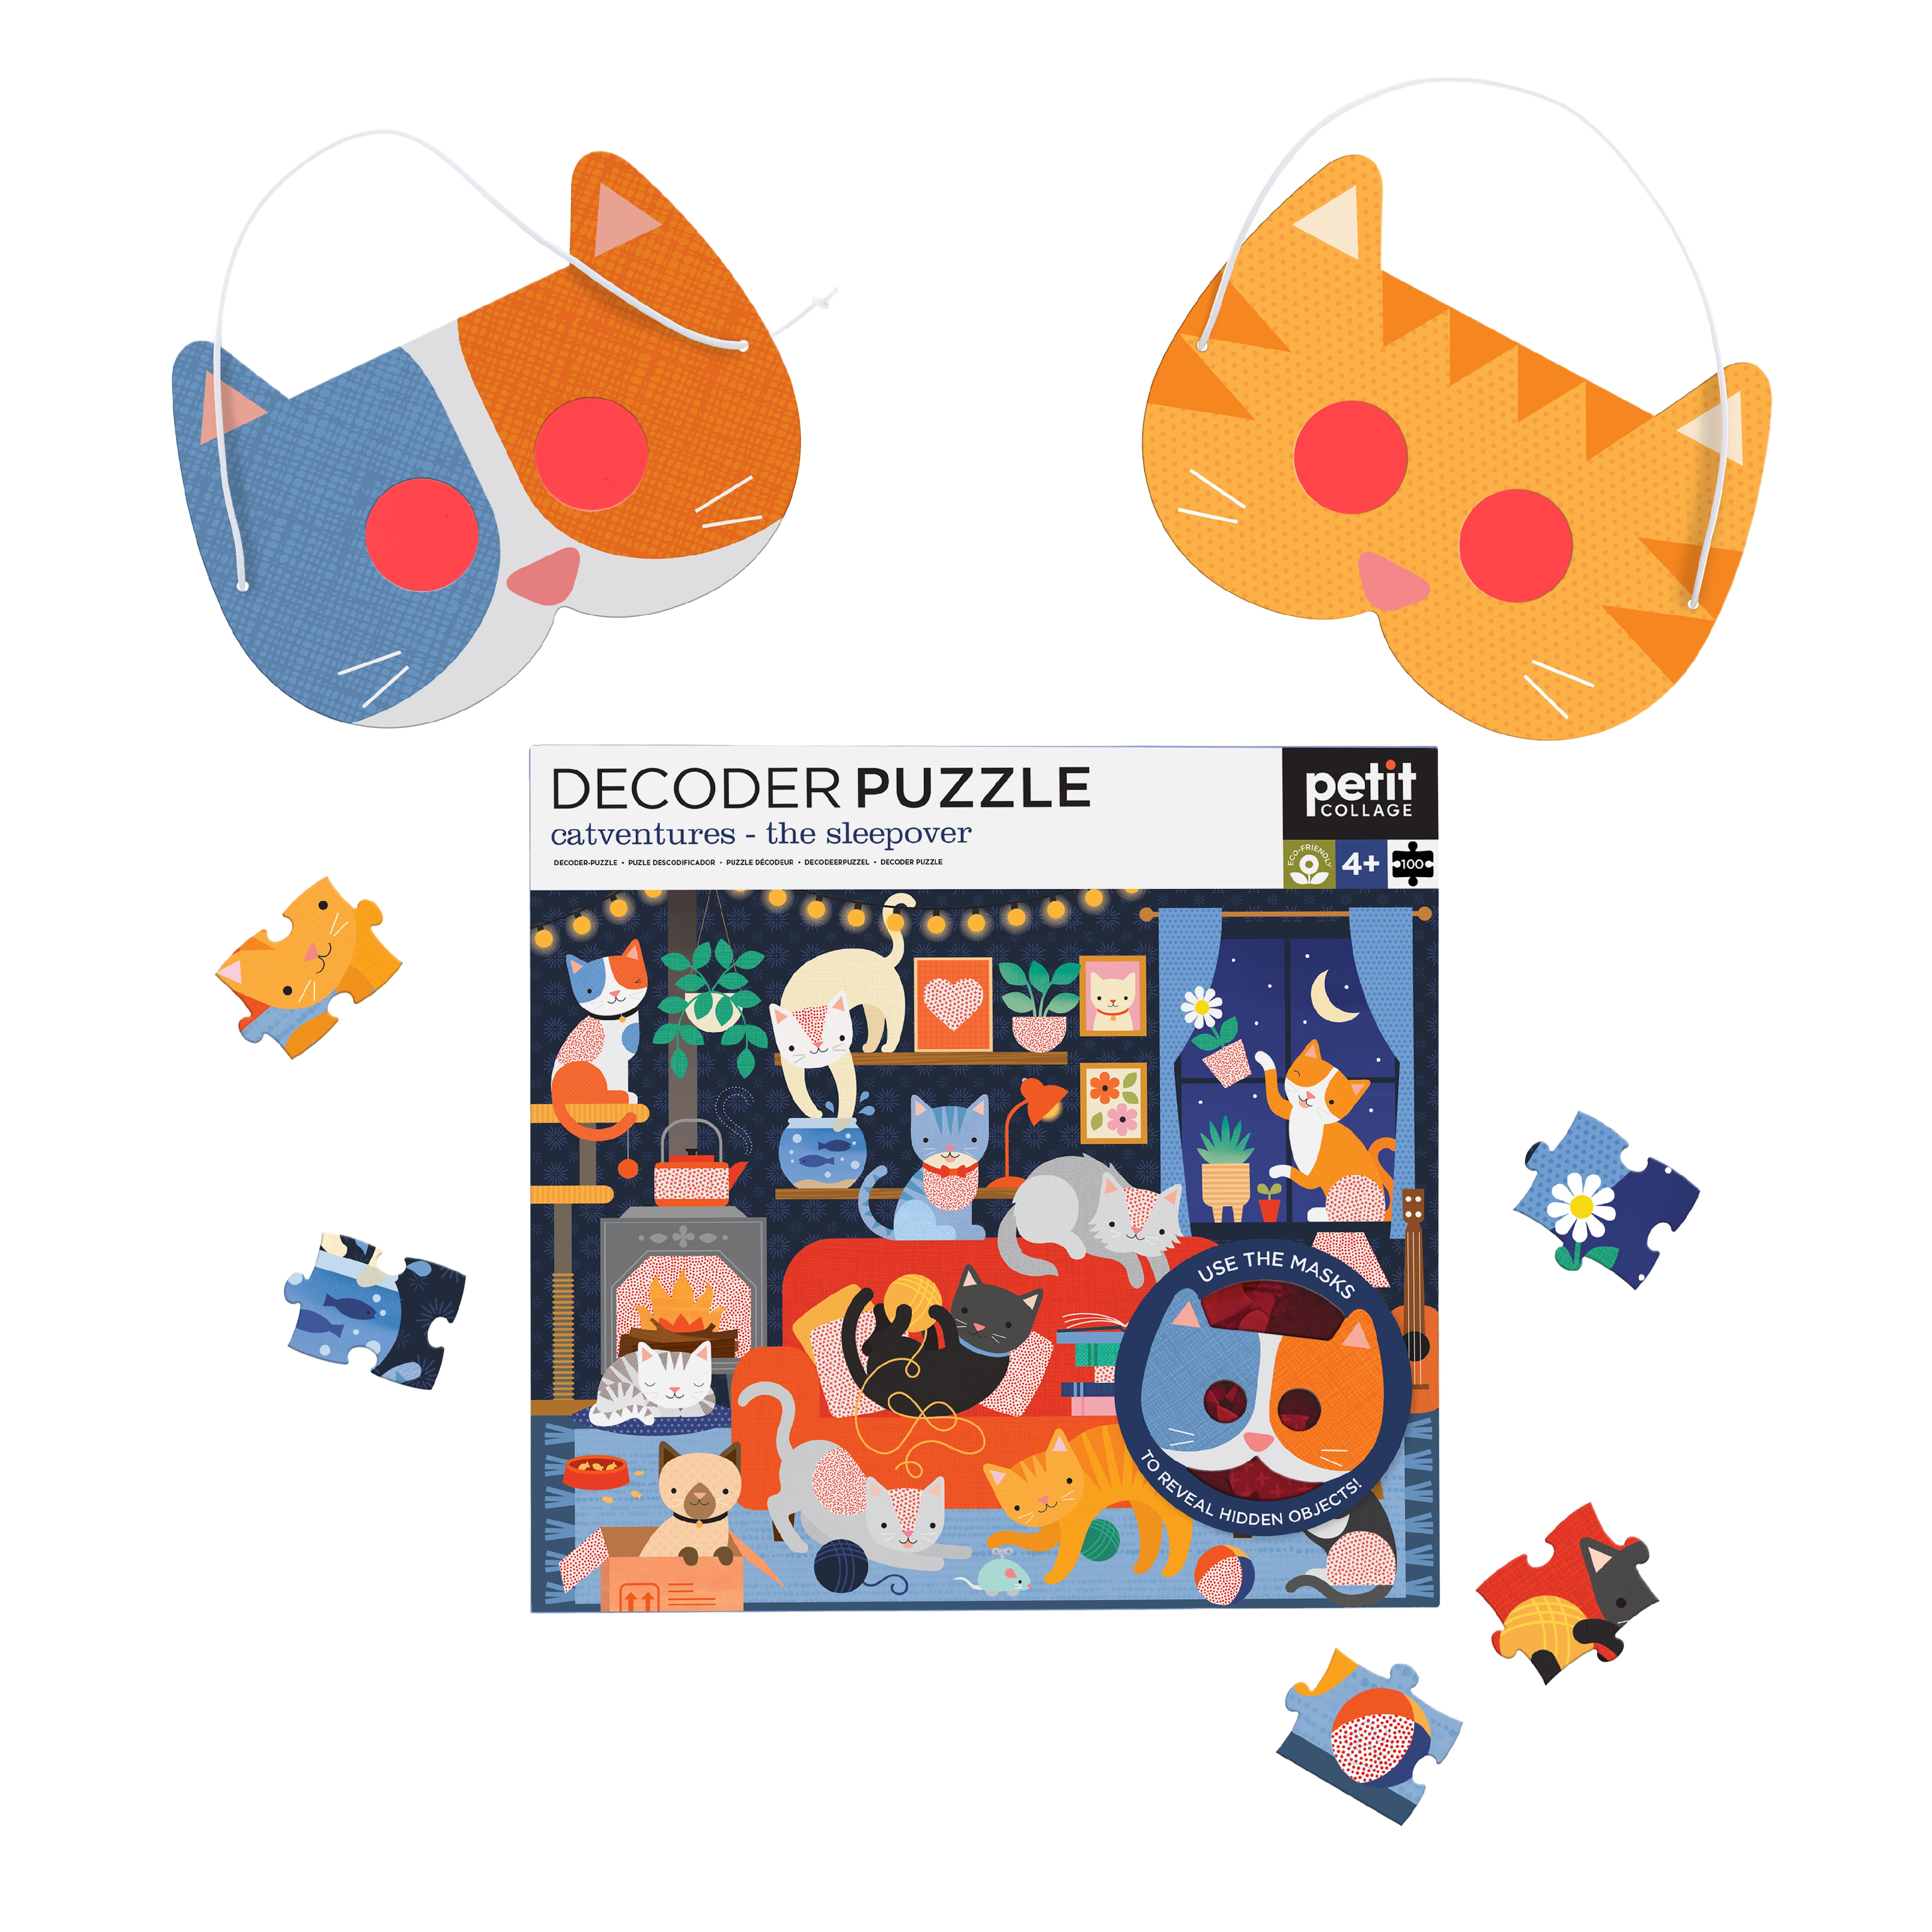 Decoder Puzzle: Catventures - The Sleepover